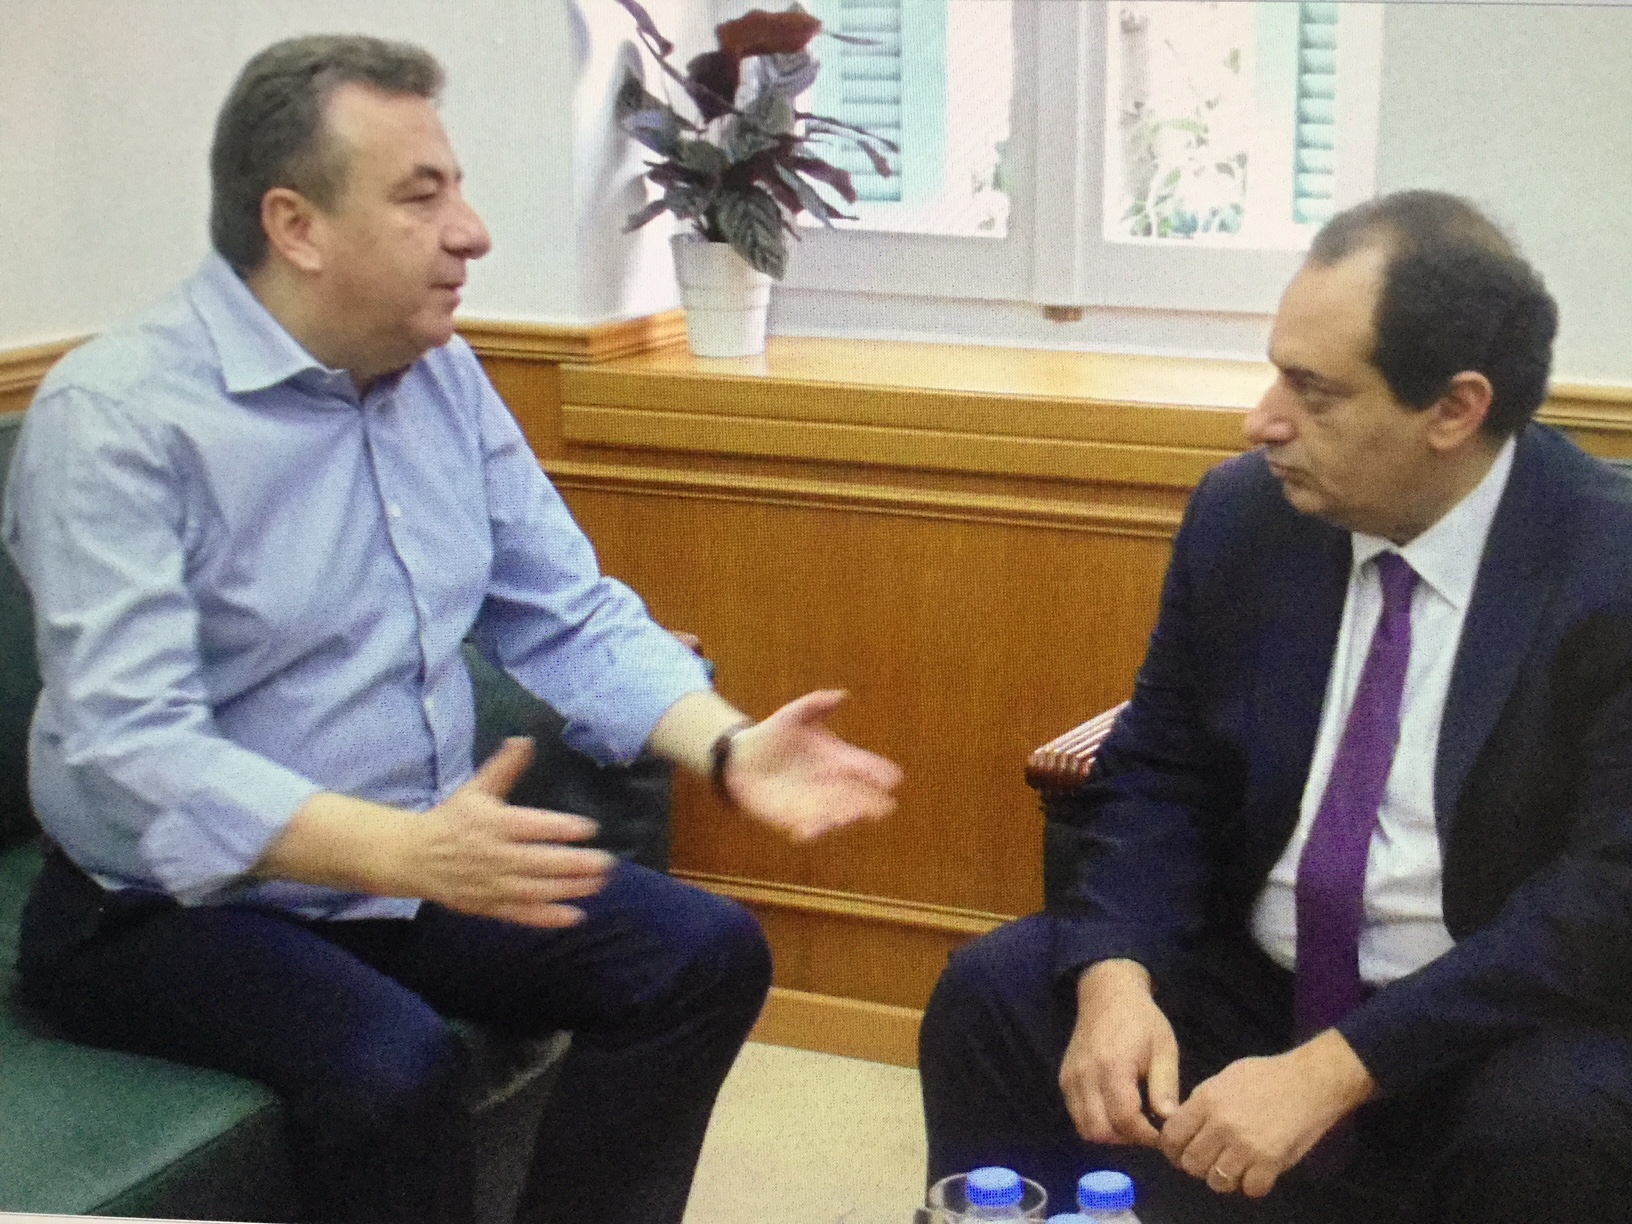 Παρέμβαση Υπουργού για να “ξεκολλήσει” έργο ζητά ο Αρναουτάκης